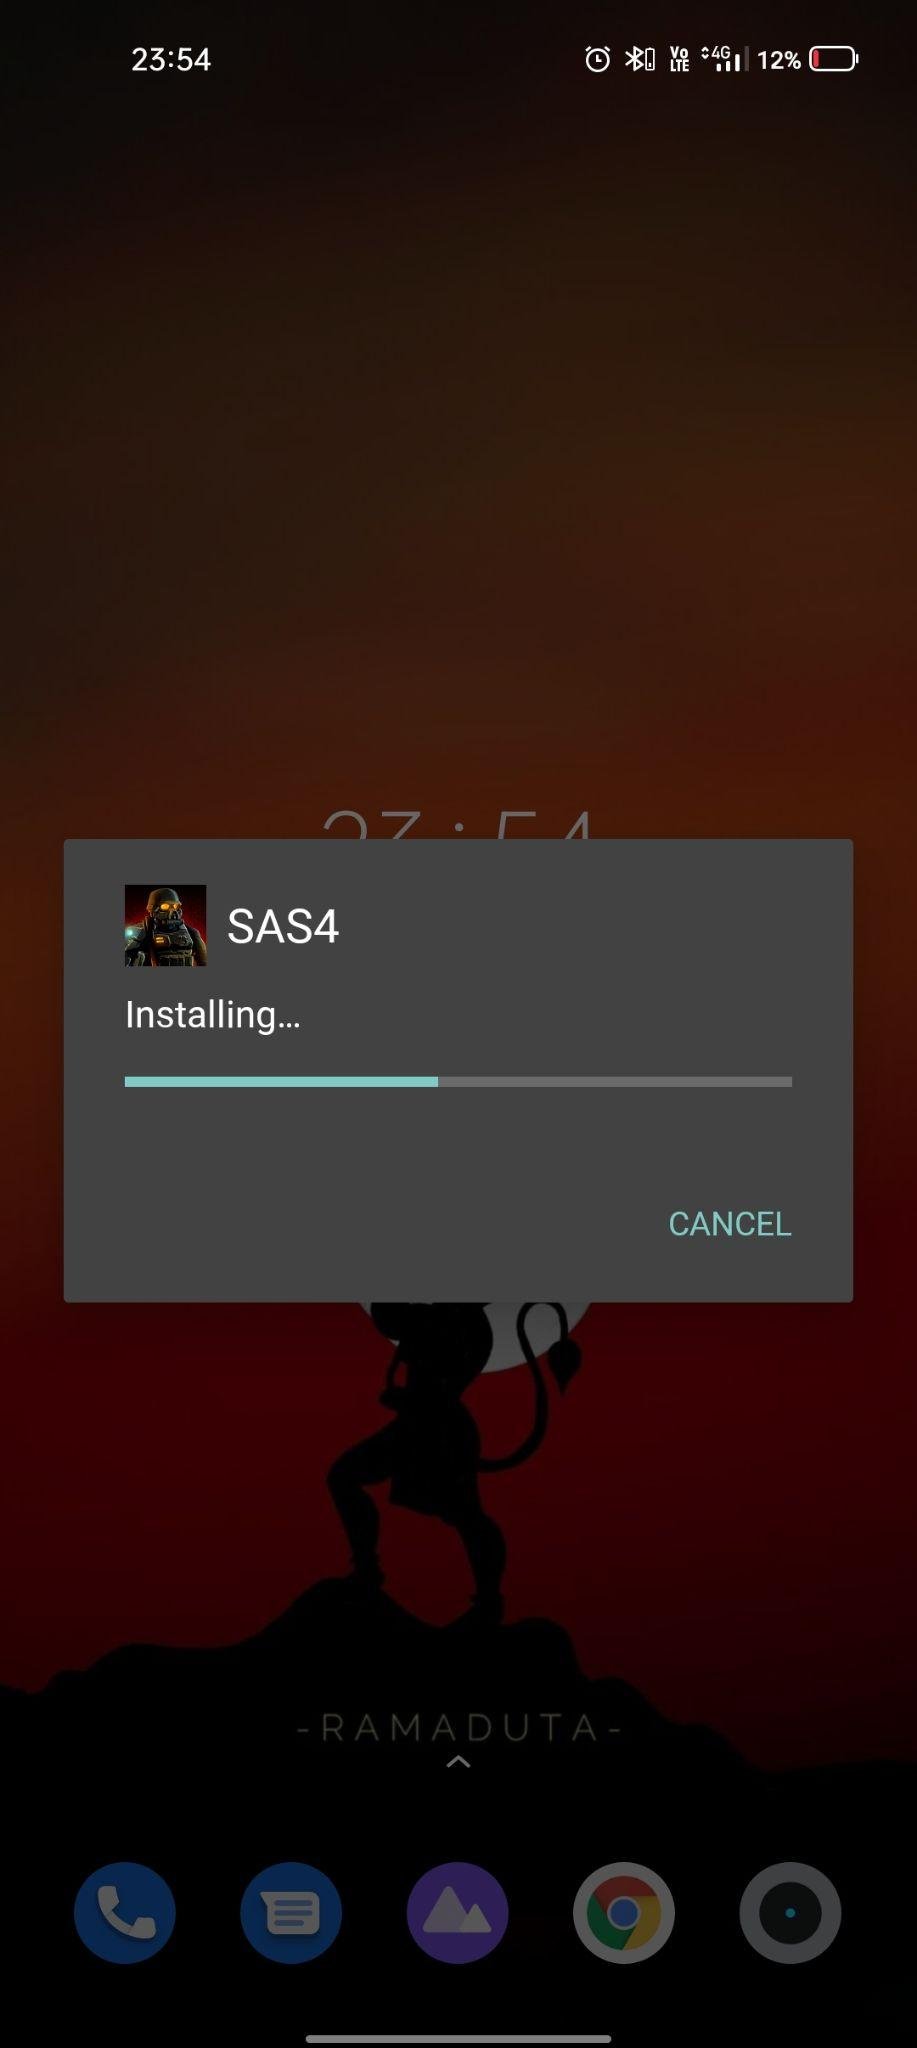 sas4 apk installing